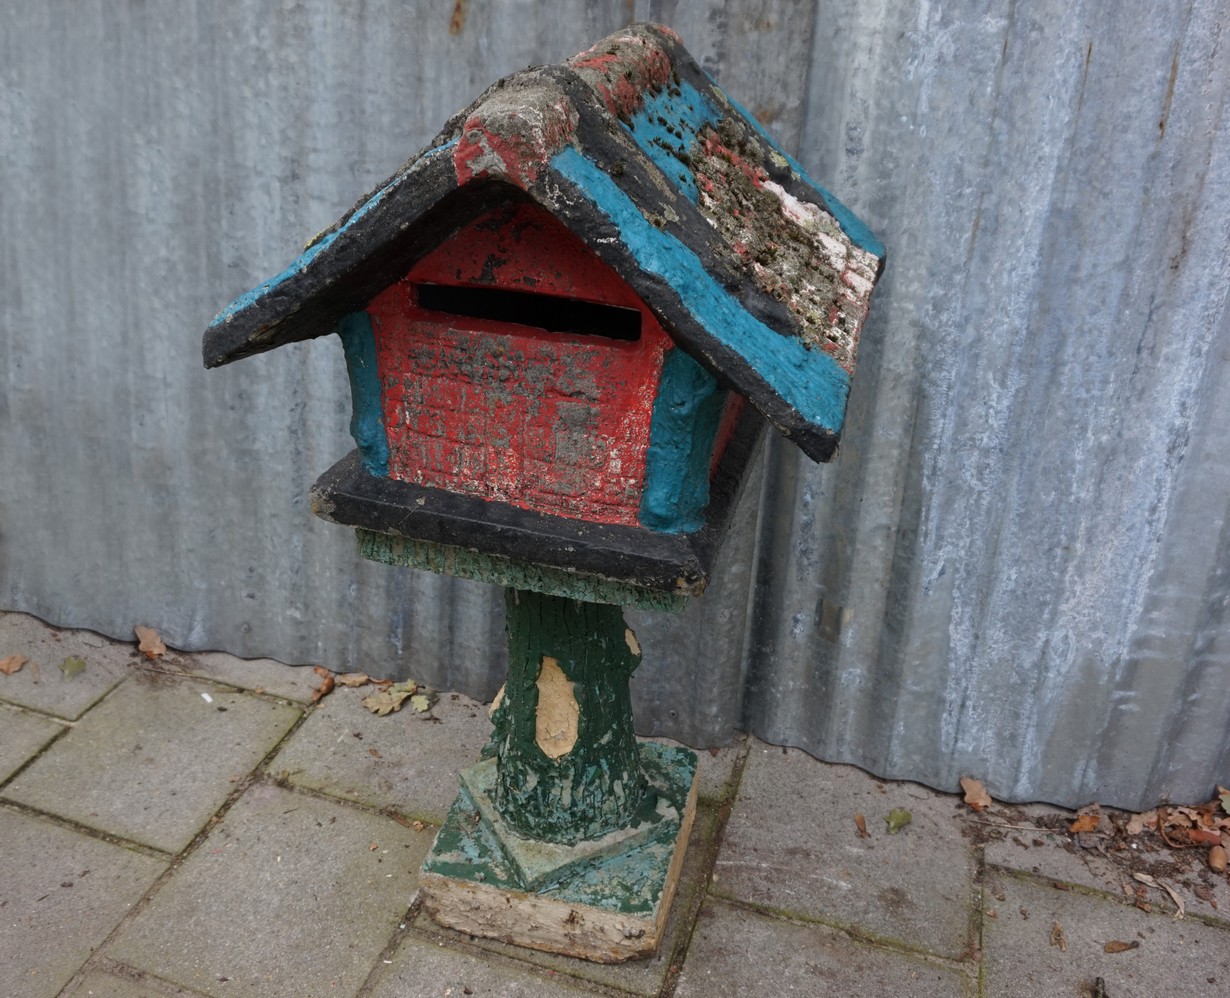 Politieagent Variant joggen Oud antiek betonnen brievenbus huisje, vogelkooi, boomstronk motief